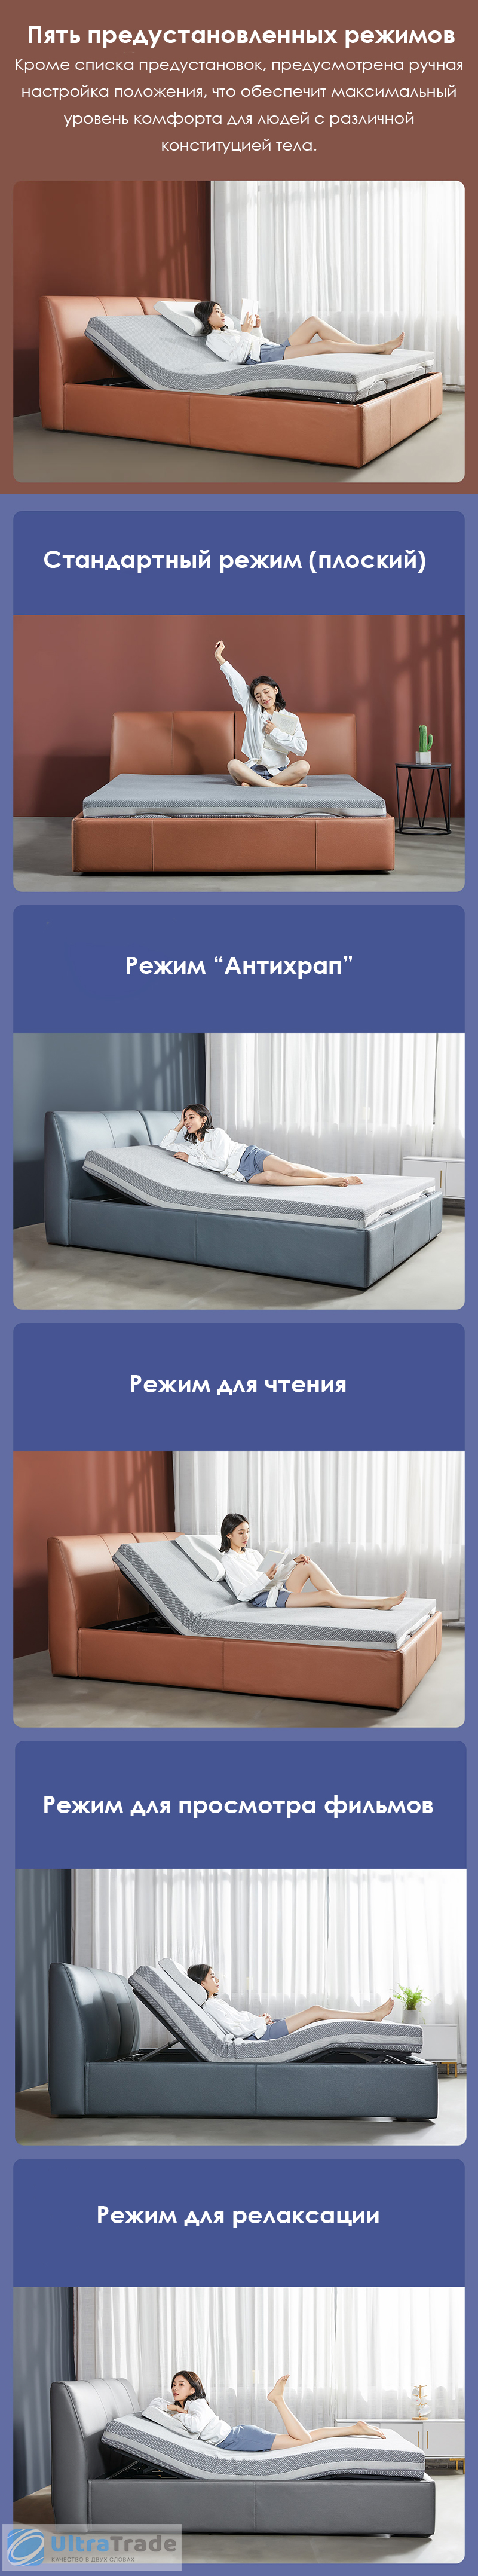 Двуспальная кровать Xiaomi 8h Milan Smart Electric Bed DT1 1.8 m Grey Blue (умное основание и ортопедический матрас R2 Pro)